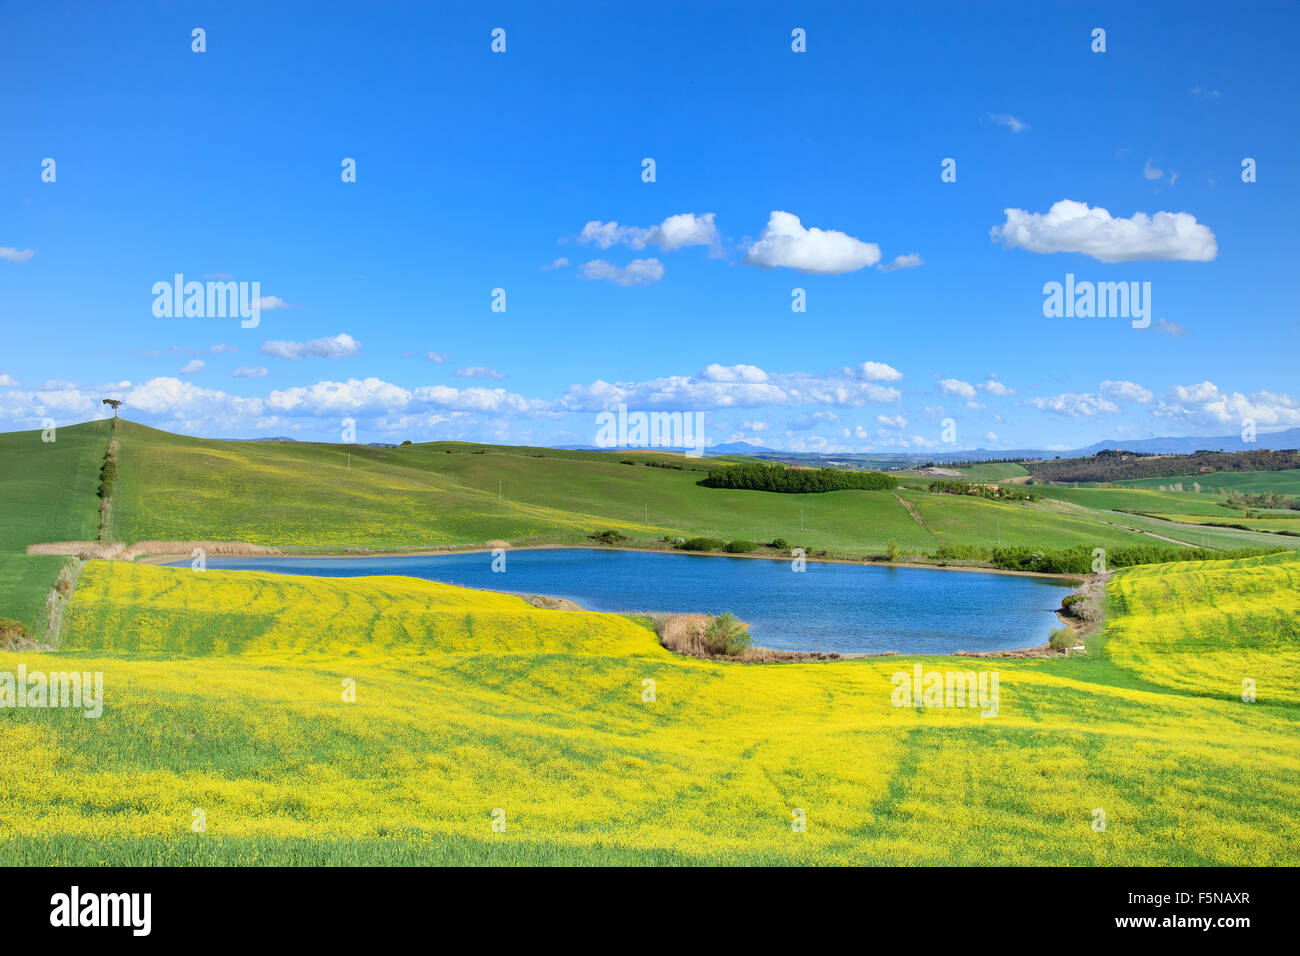 Toskana, Crete Senesi Landschaft in der Nähe von Siena, Italien, Europa. Kleine blaue See, grüne und gelbe Felder, blauer Himmel mit kleinen Wolken Stockfoto